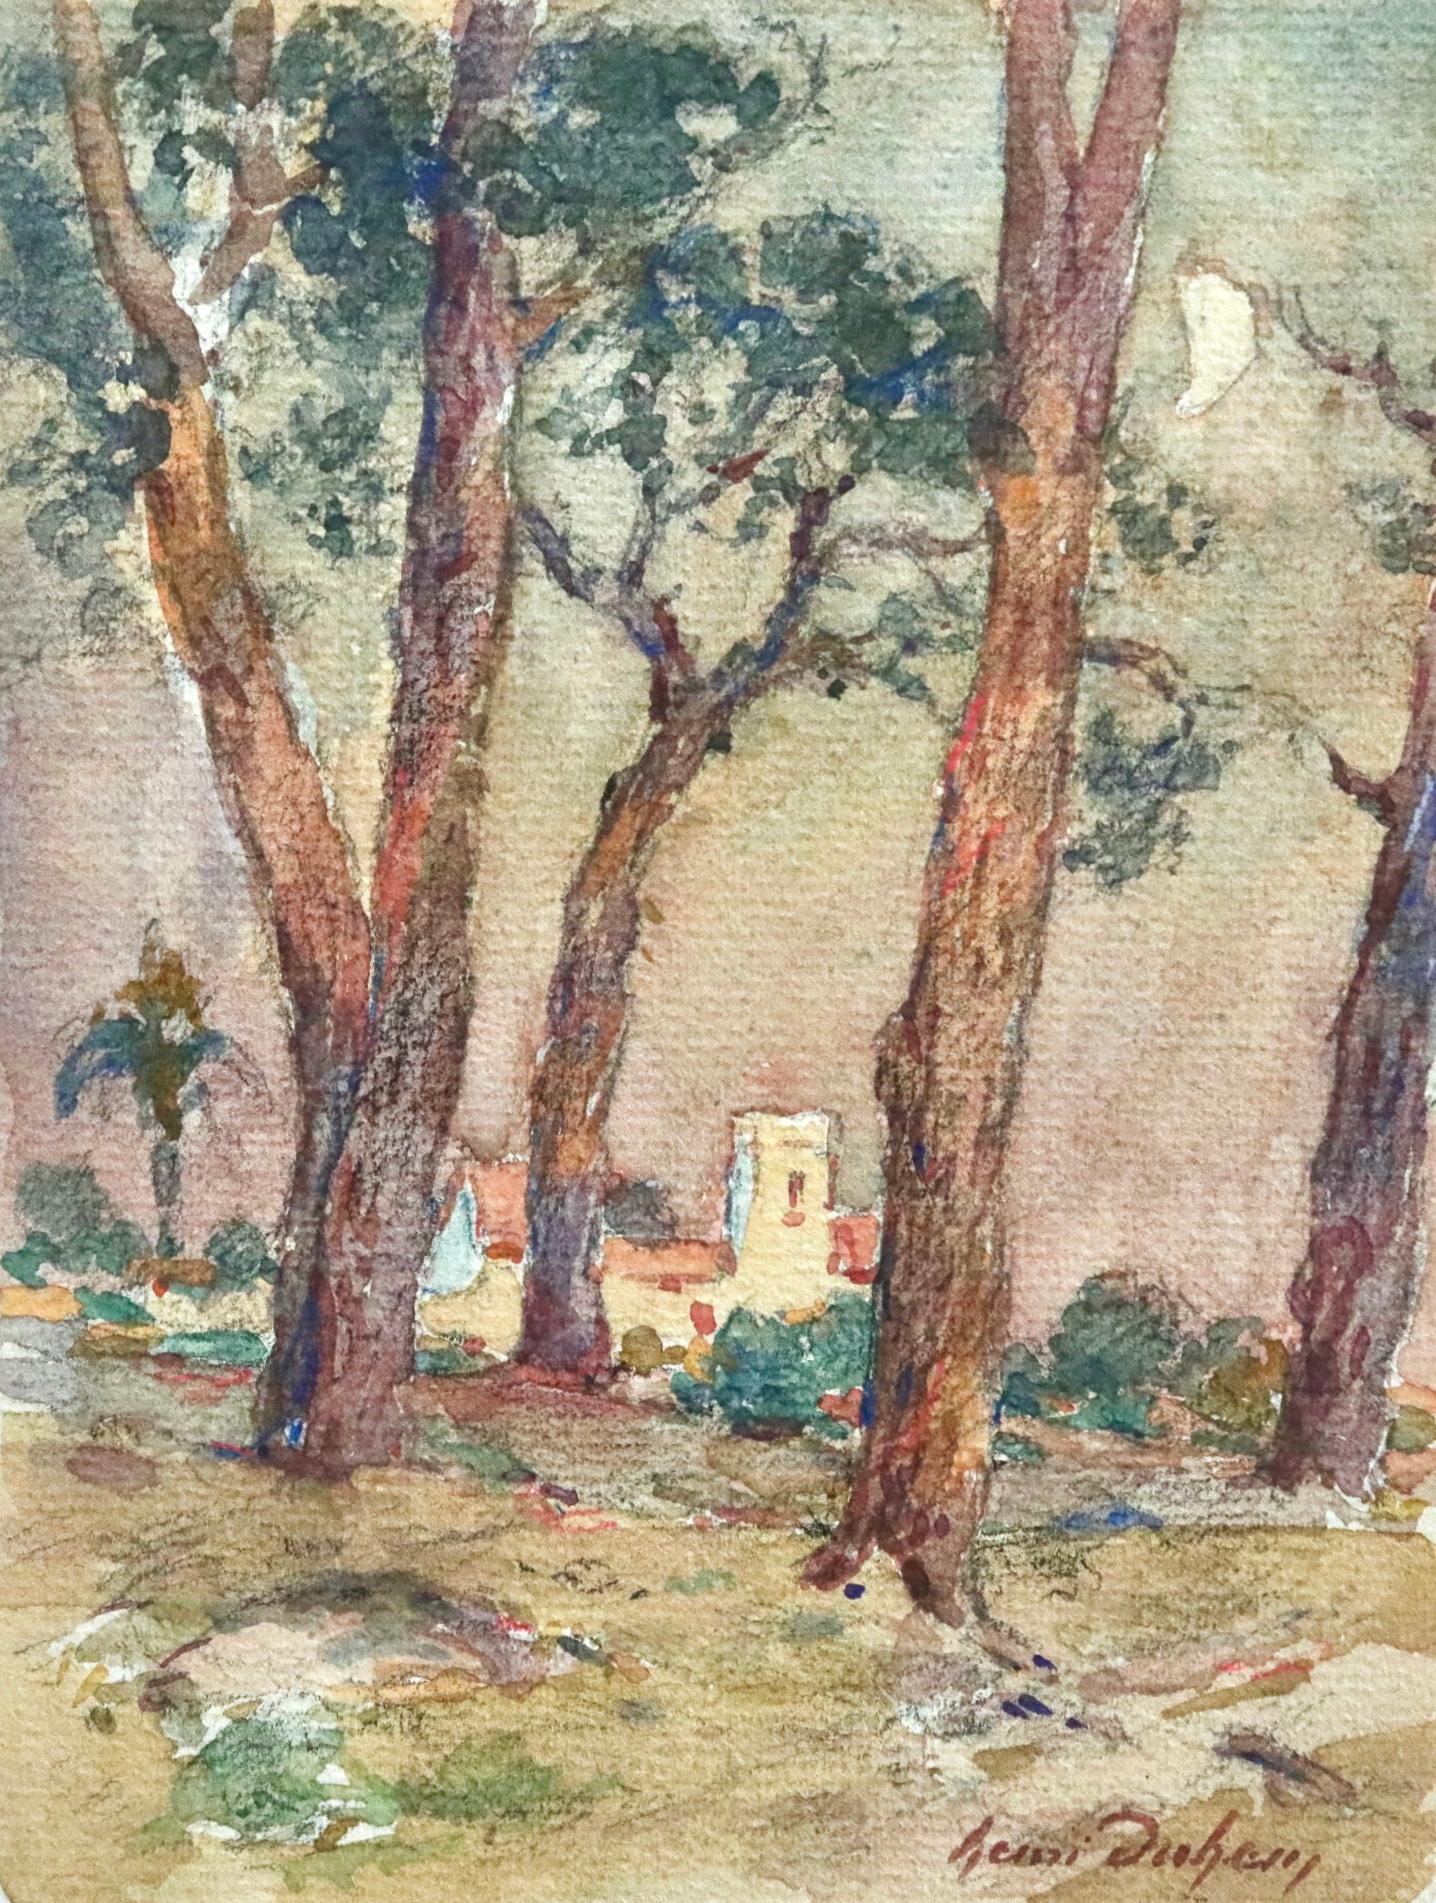 Aquarell auf Papier um 1925 von Henri Duhem, das Bäume in einer mondbeschienenen Landschaft mit einem Haus dahinter zeigt. Signiert unten rechts. Dieses Gemälde ist derzeit nicht gerahmt, aber ein passender Rahmen kann bei Bedarf beschafft